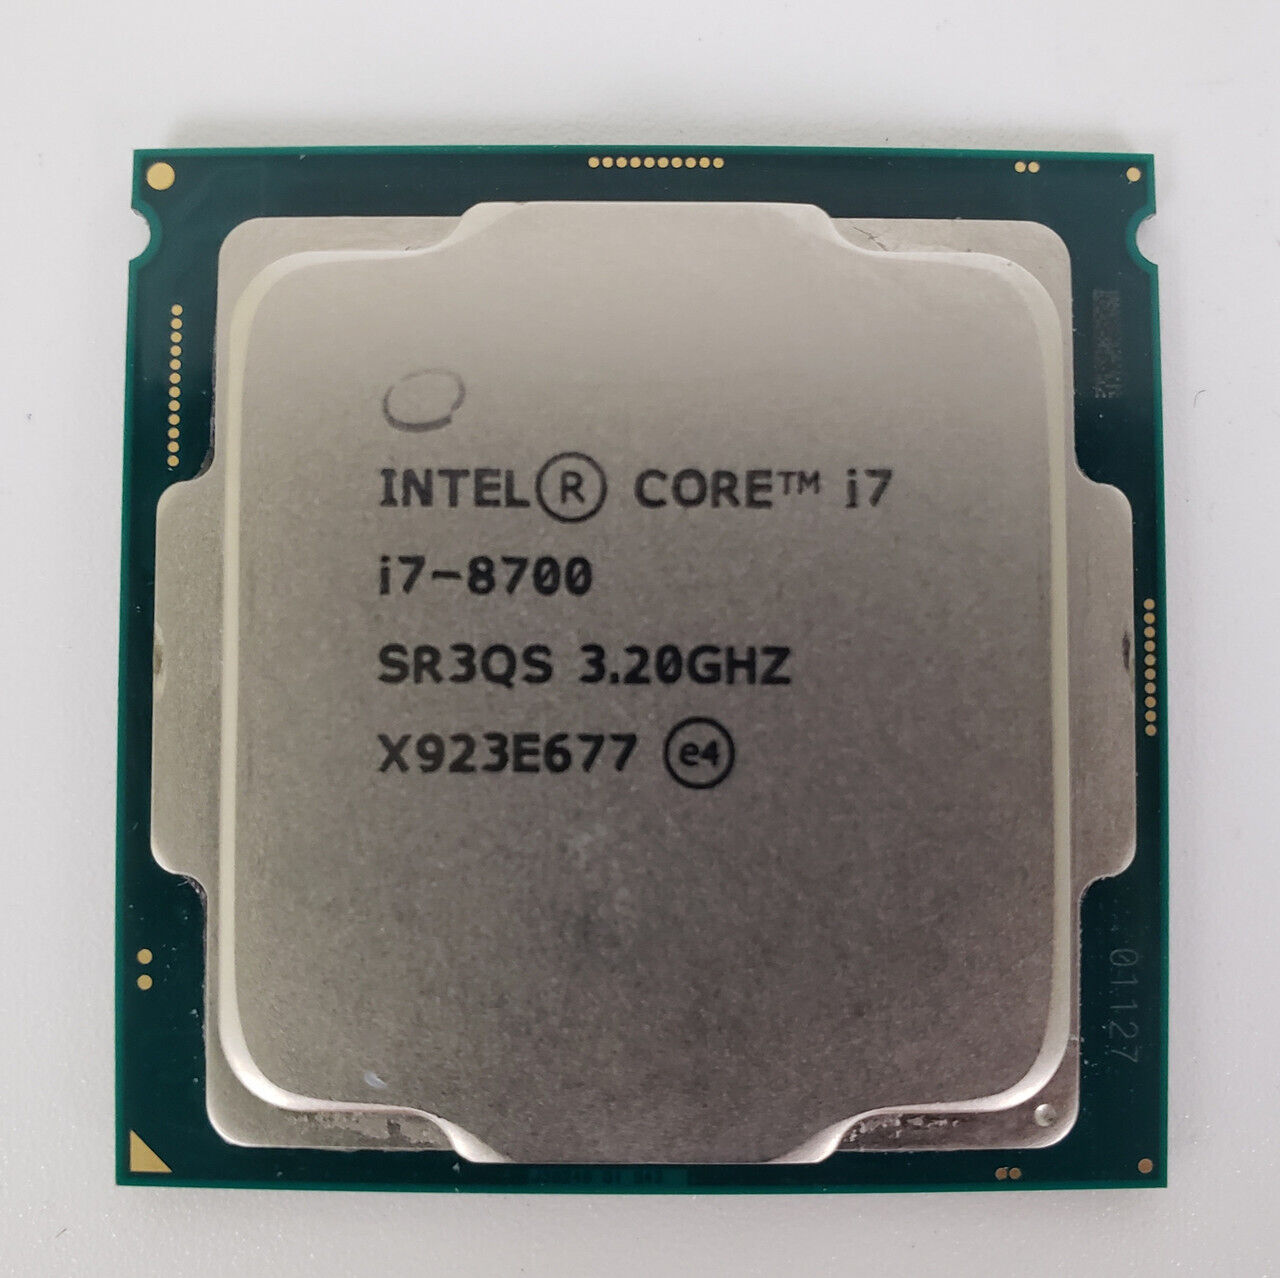 Intel Core i7-8700 SR3QS 3.20GHz Processor | Grade A